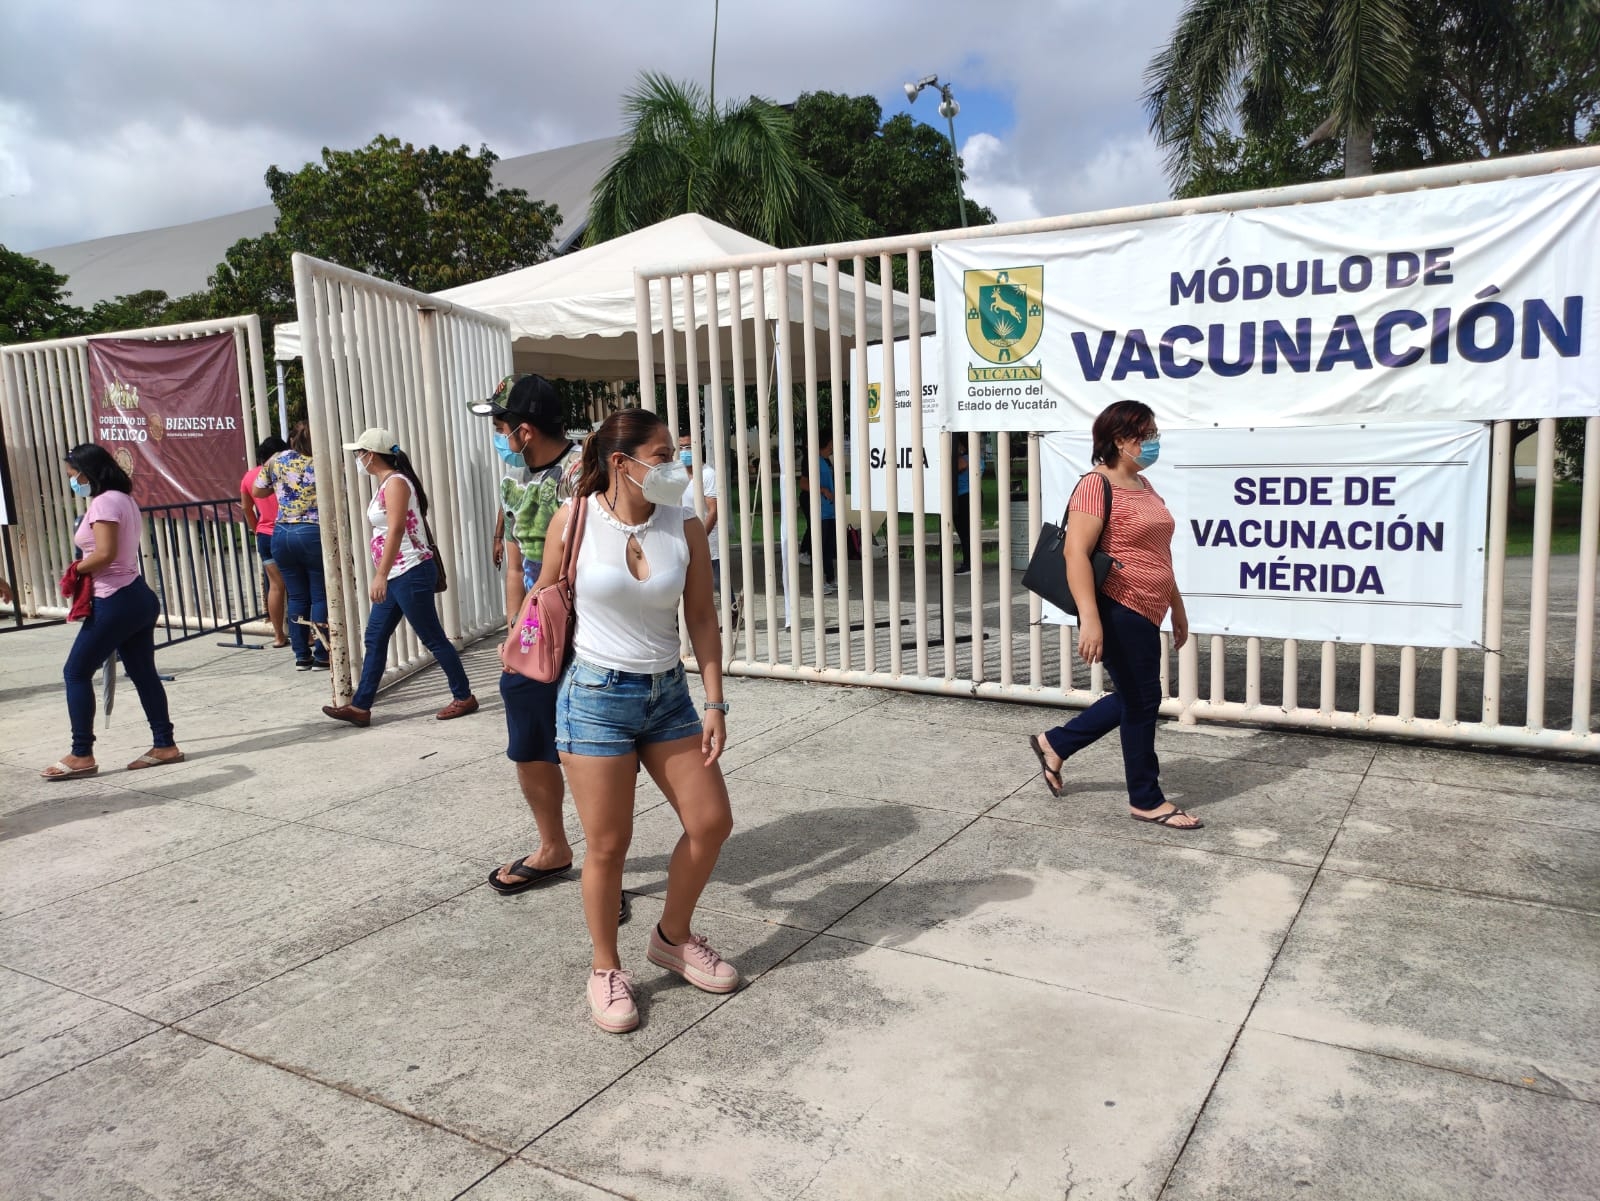 La campaña de vacunación en Yucatán continúa hasta el día de mañana viernes